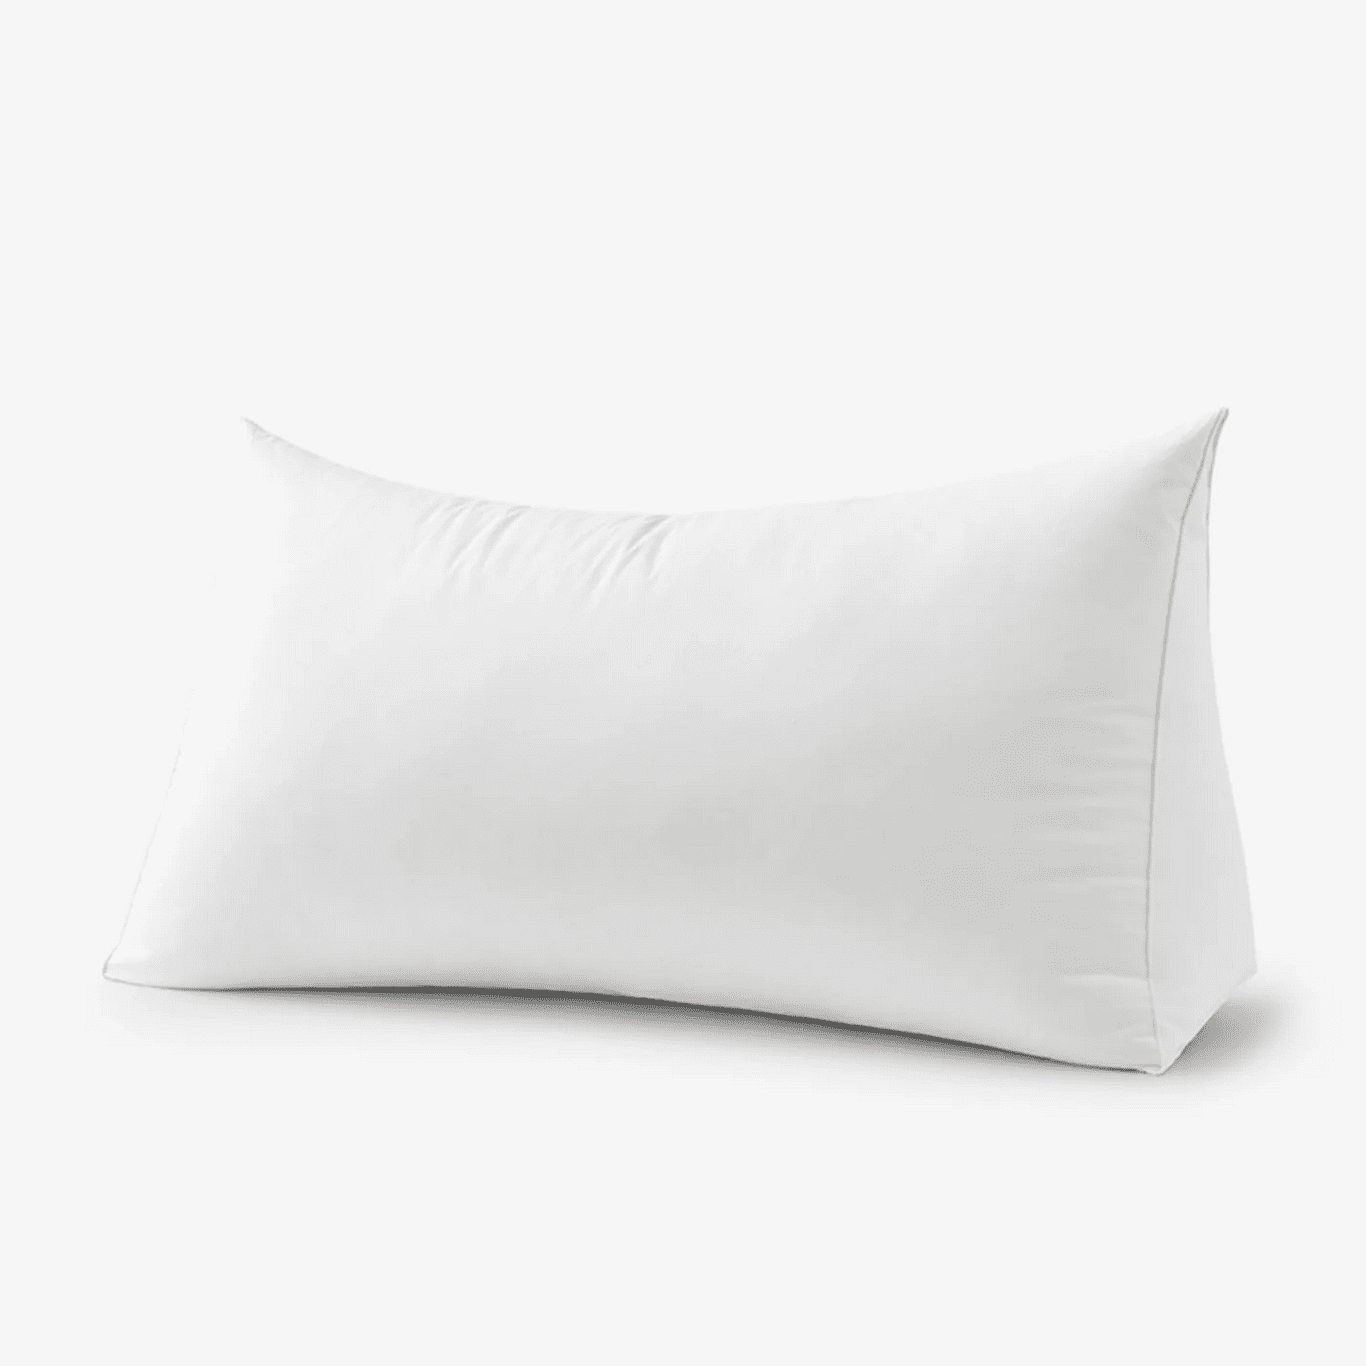 5 Best Wedge Pillows 2020